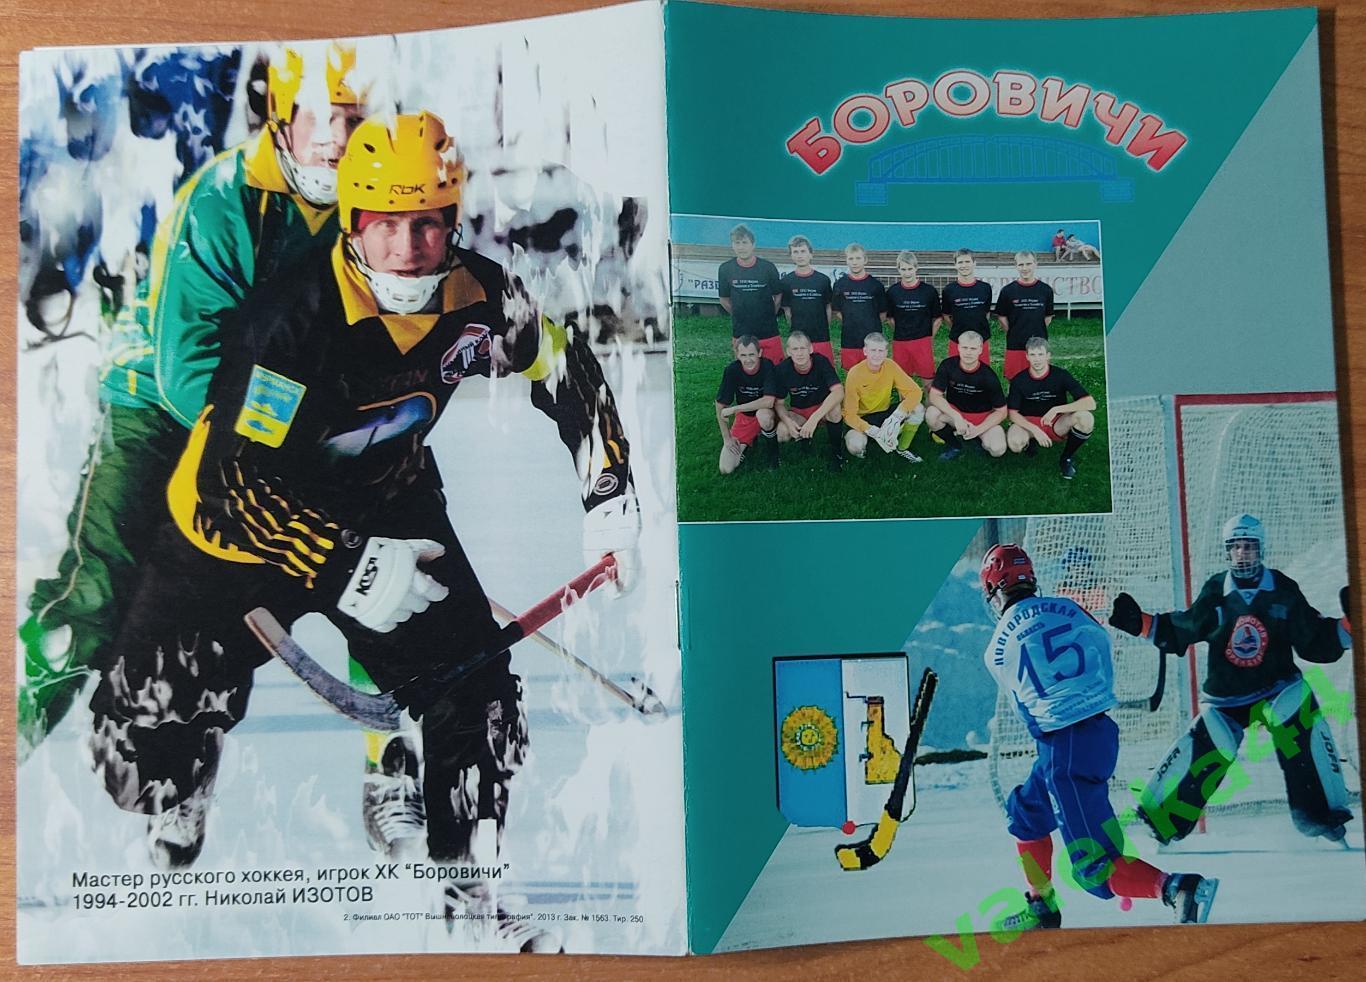 (МК) Боровичи Футбол 2013 / хоккей с мячом Календарь-справочник Новгород